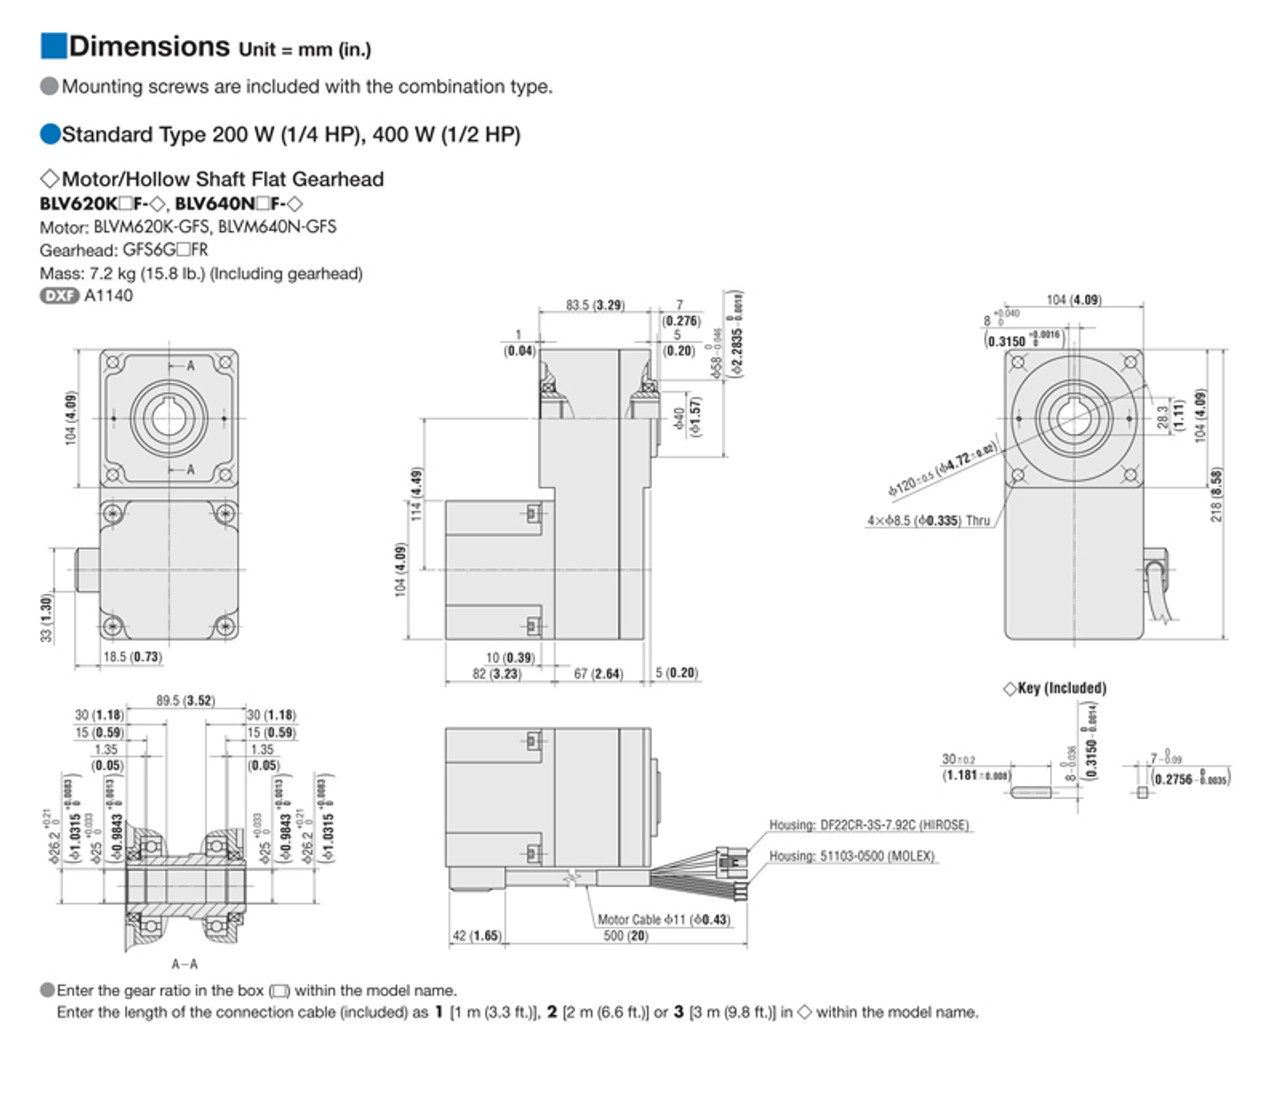 BLV640N5F - Dimensions